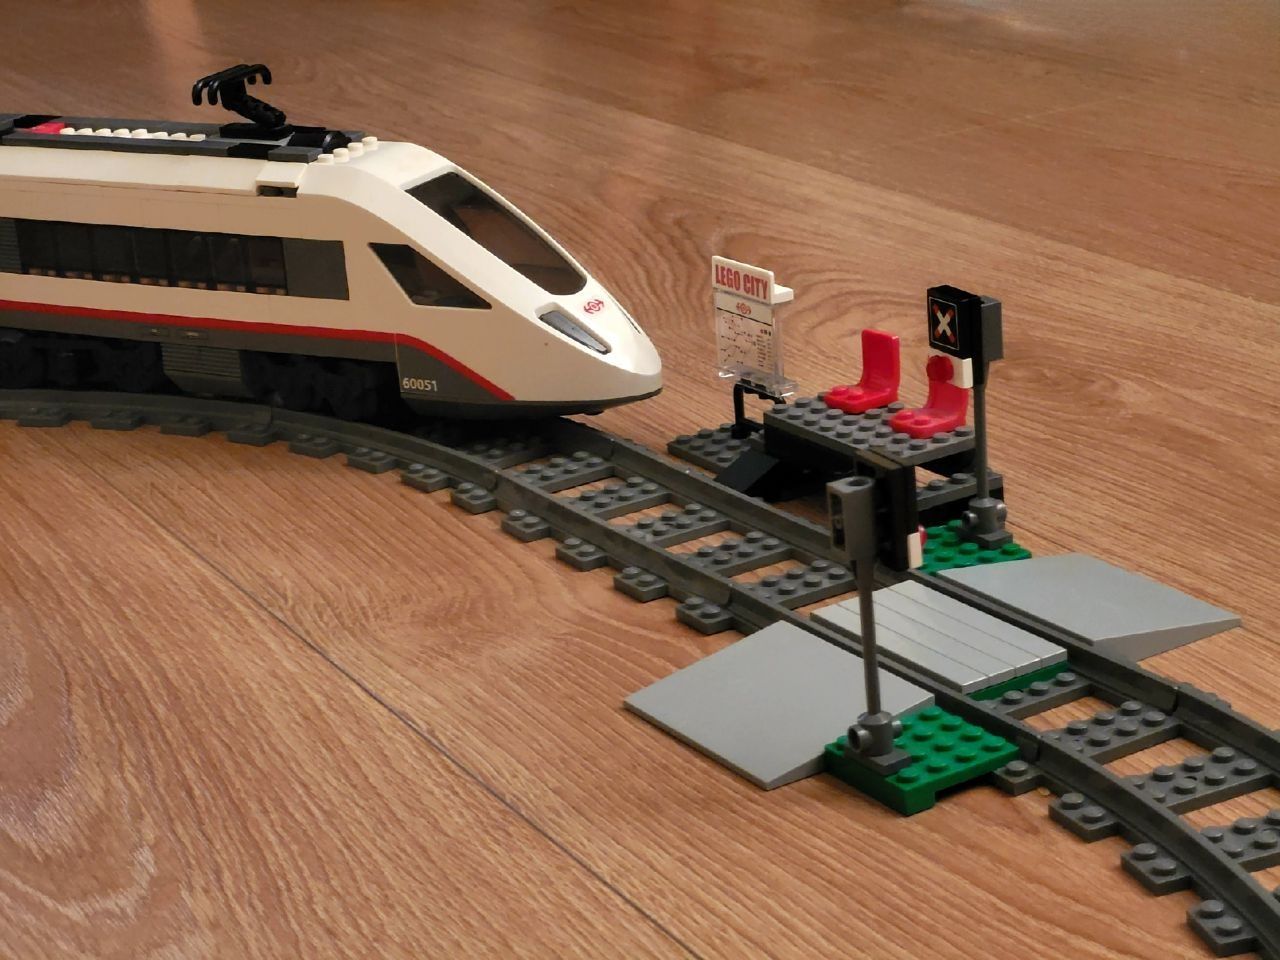 Lego City 60051 train швидкісний потяг